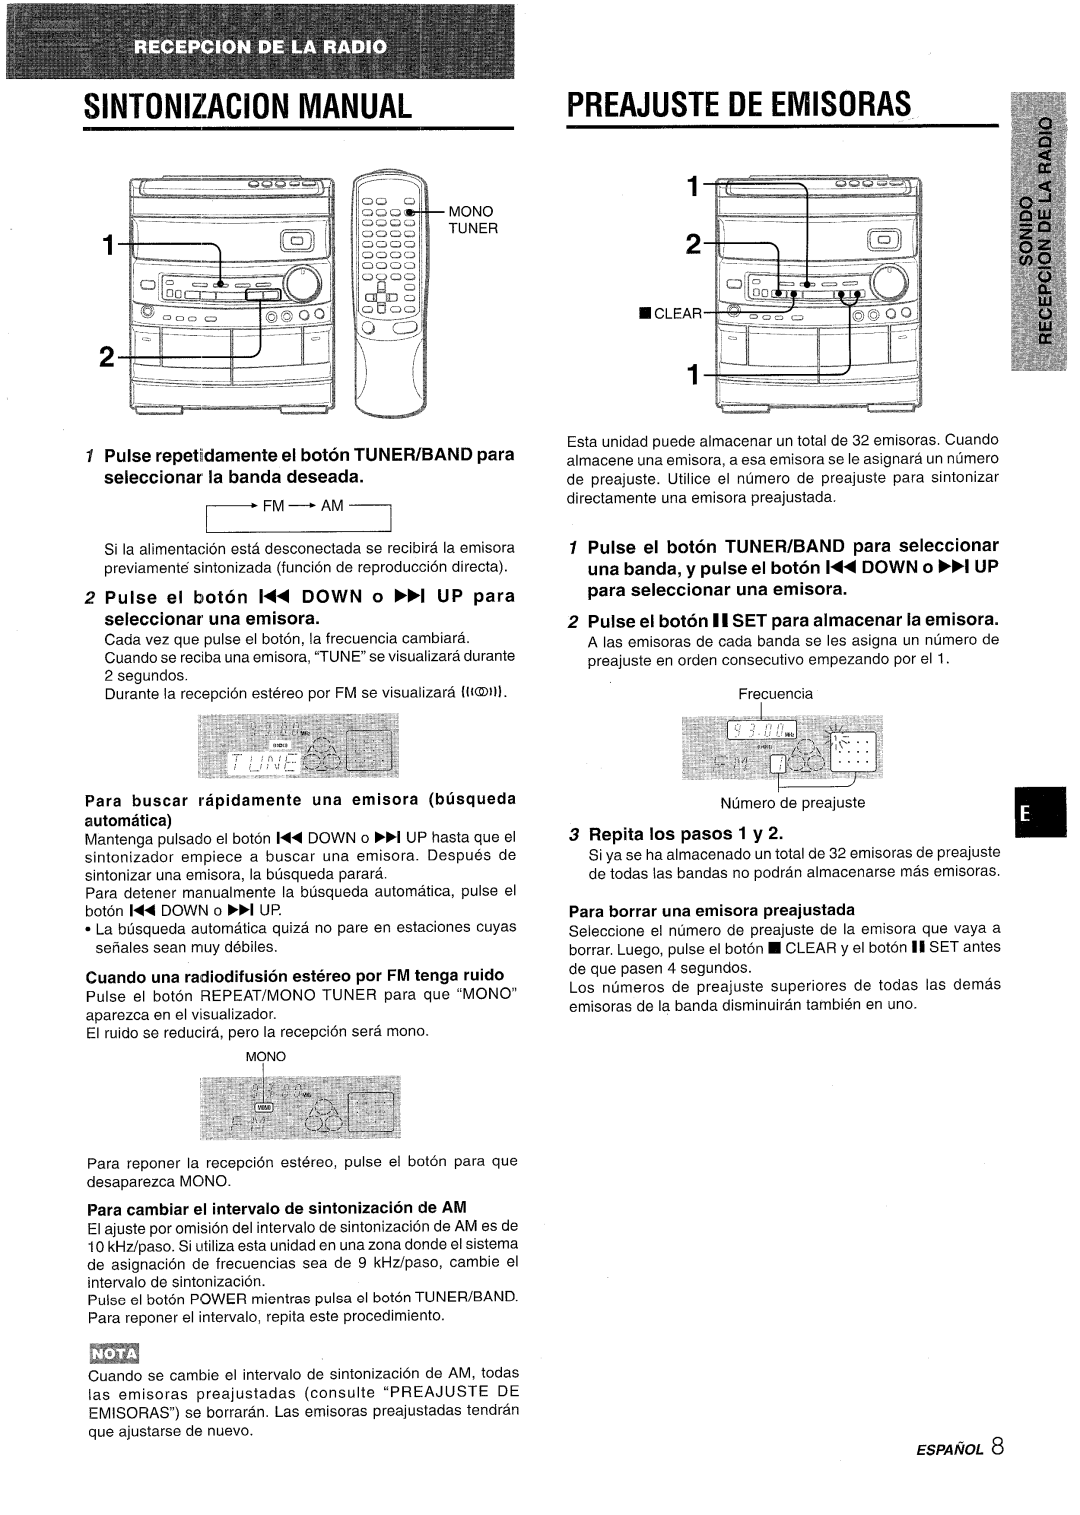 Aiwa NSX-AV800 manual SINTON1ZAC1ON MANUAL, Preajuste De Emisoras, Fm- Am, Pulse el boton 1I SET para almacenar la emisora 